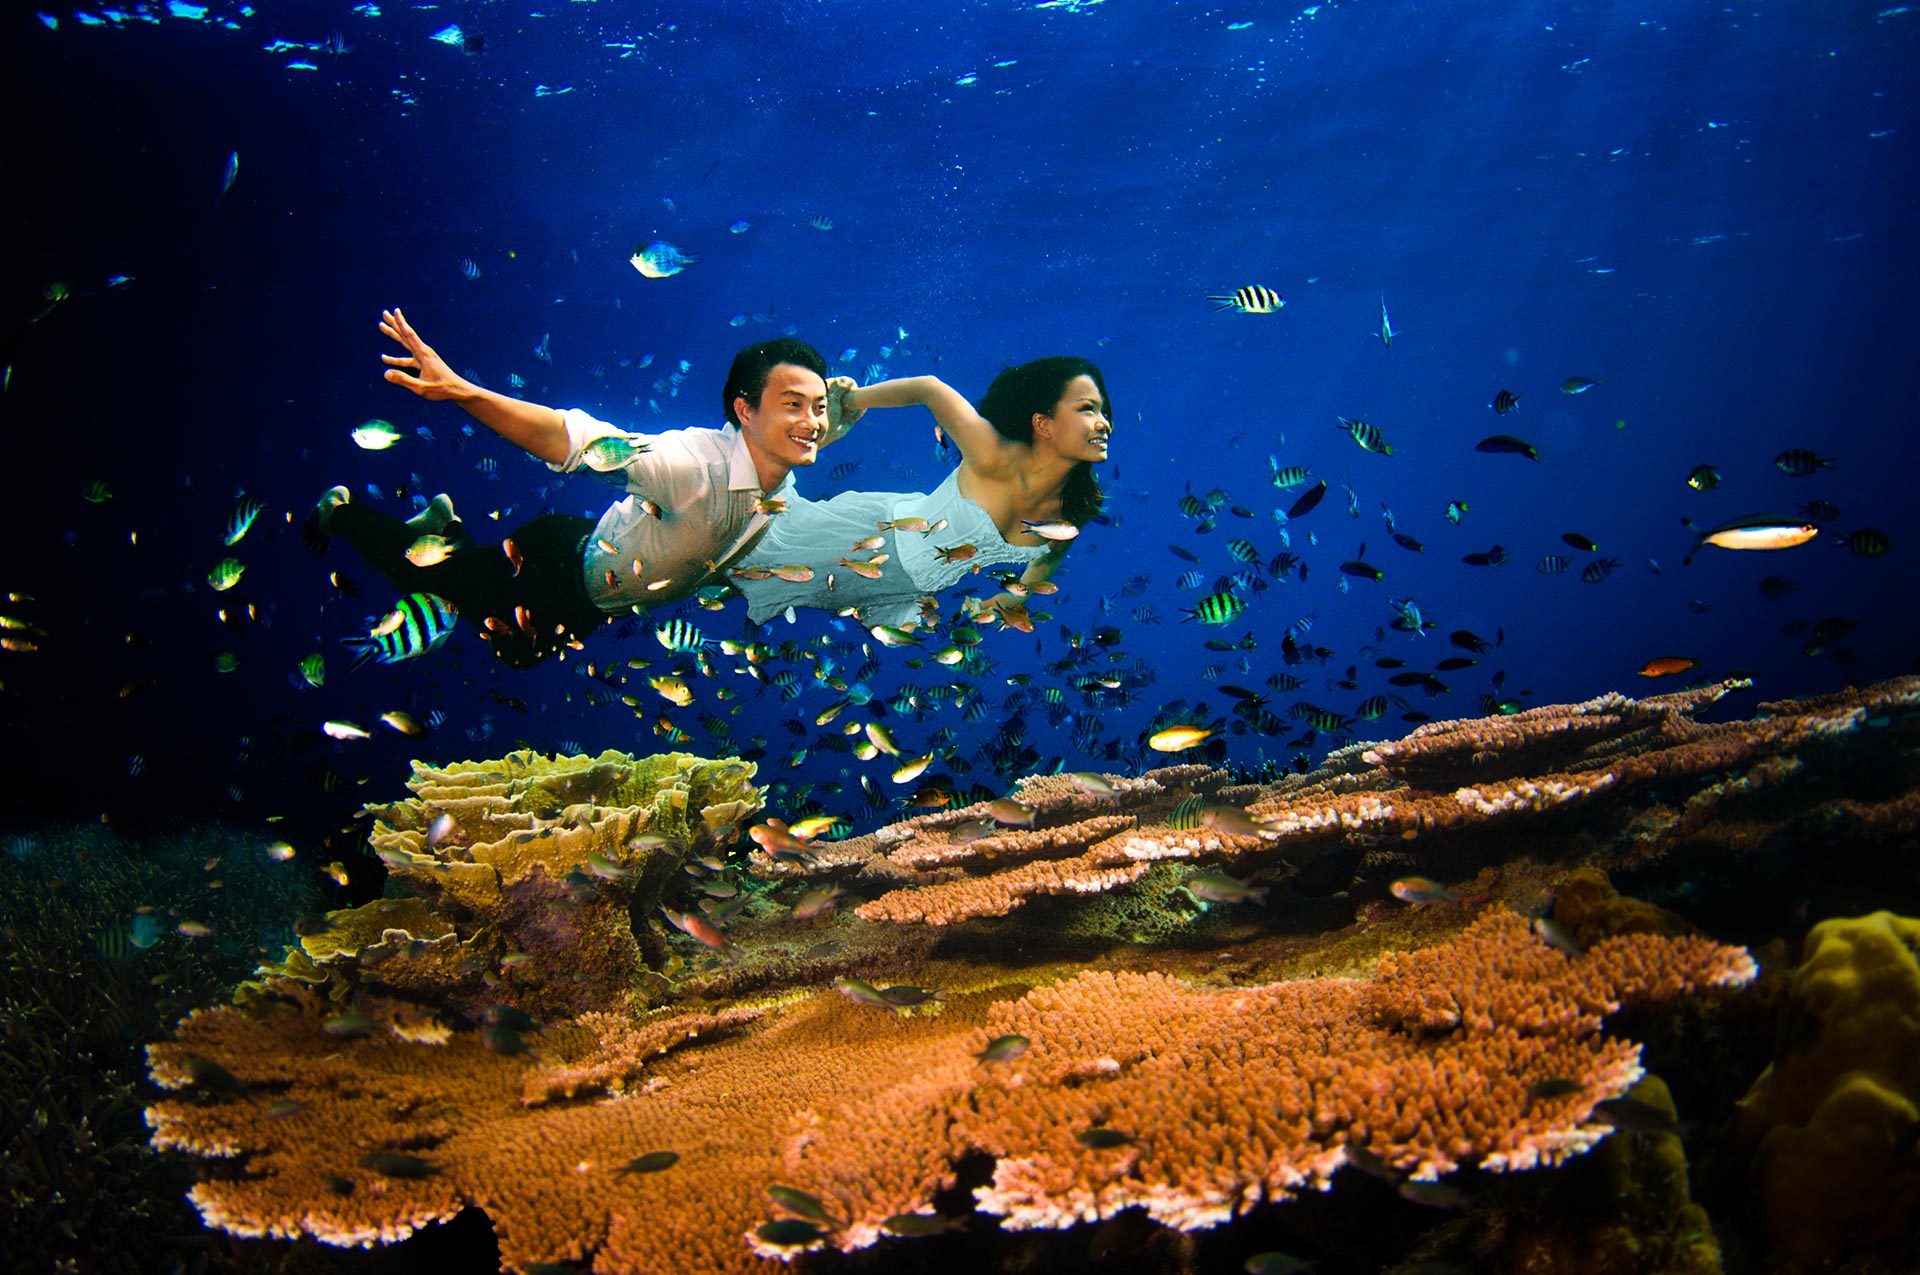 Underwater prewedding photography a creative underwater bridal shoot